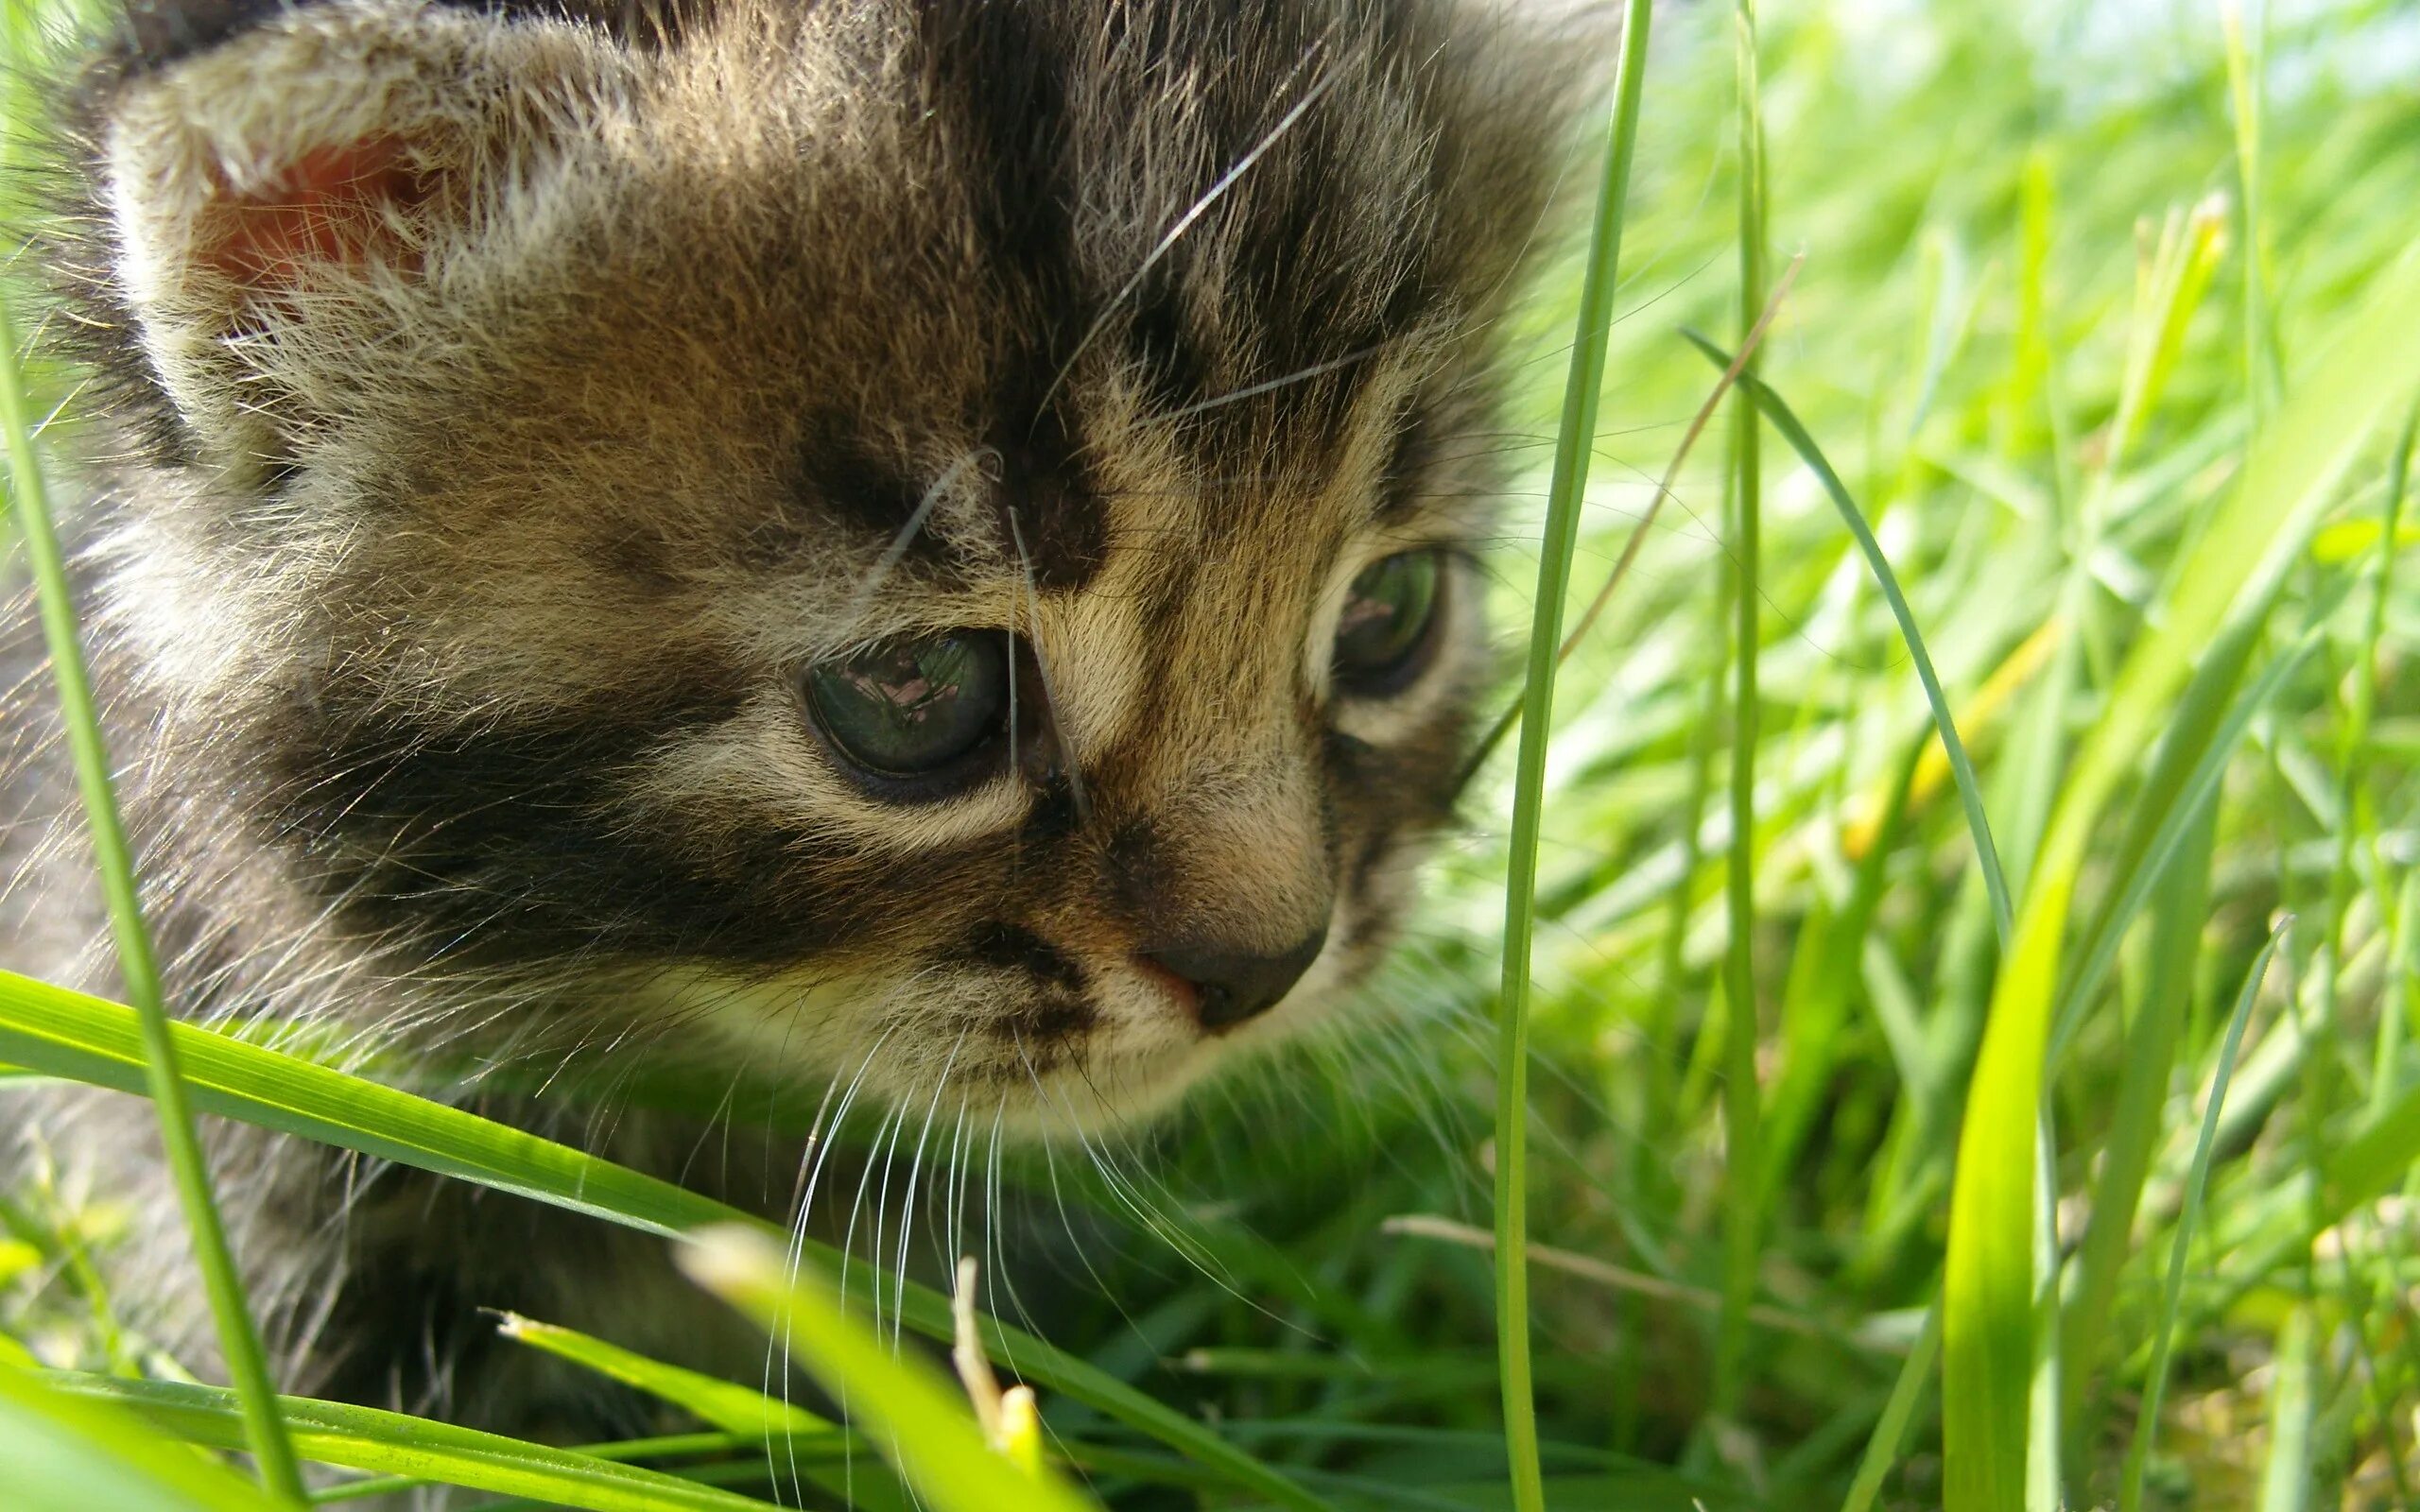 Картинки на заставку. Котенок в траве. Животные летом. Забавные котята. Заставка животные.